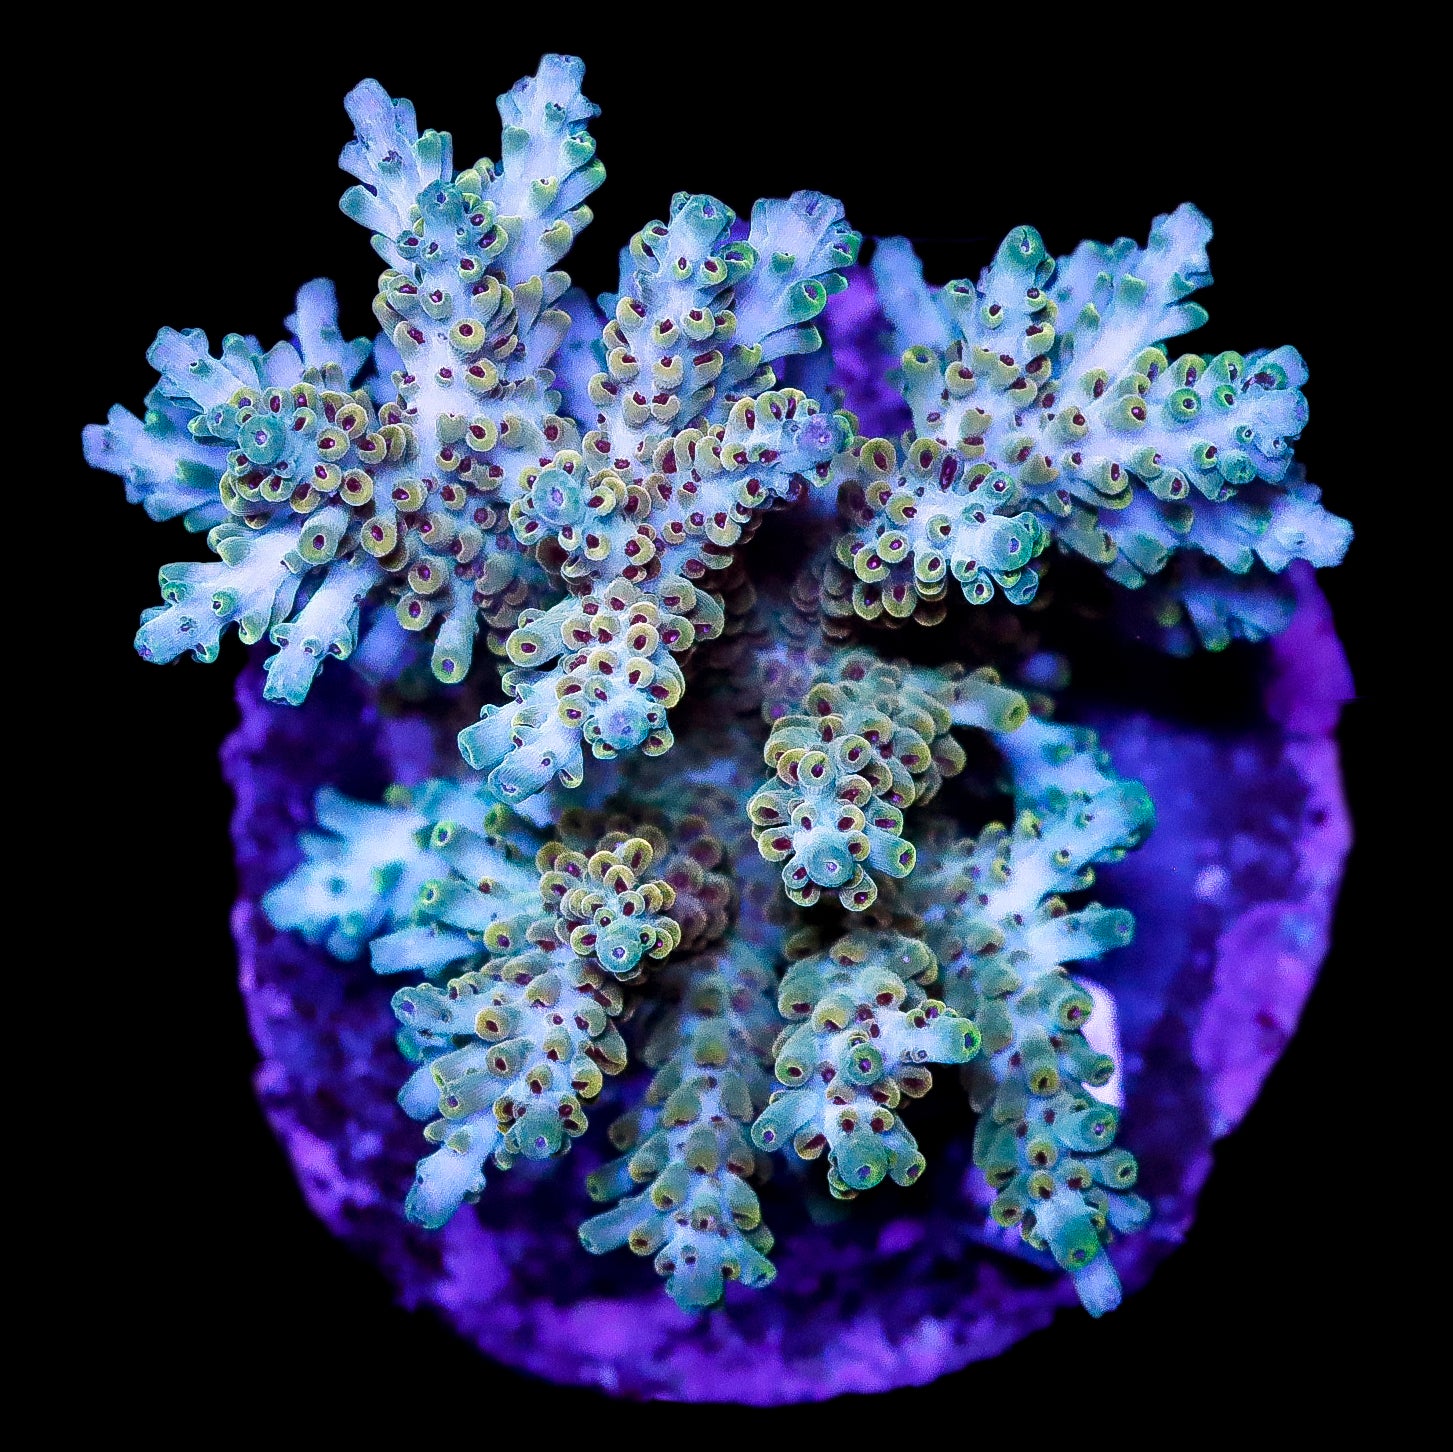 Ultra Indo Acropora Coral Colony